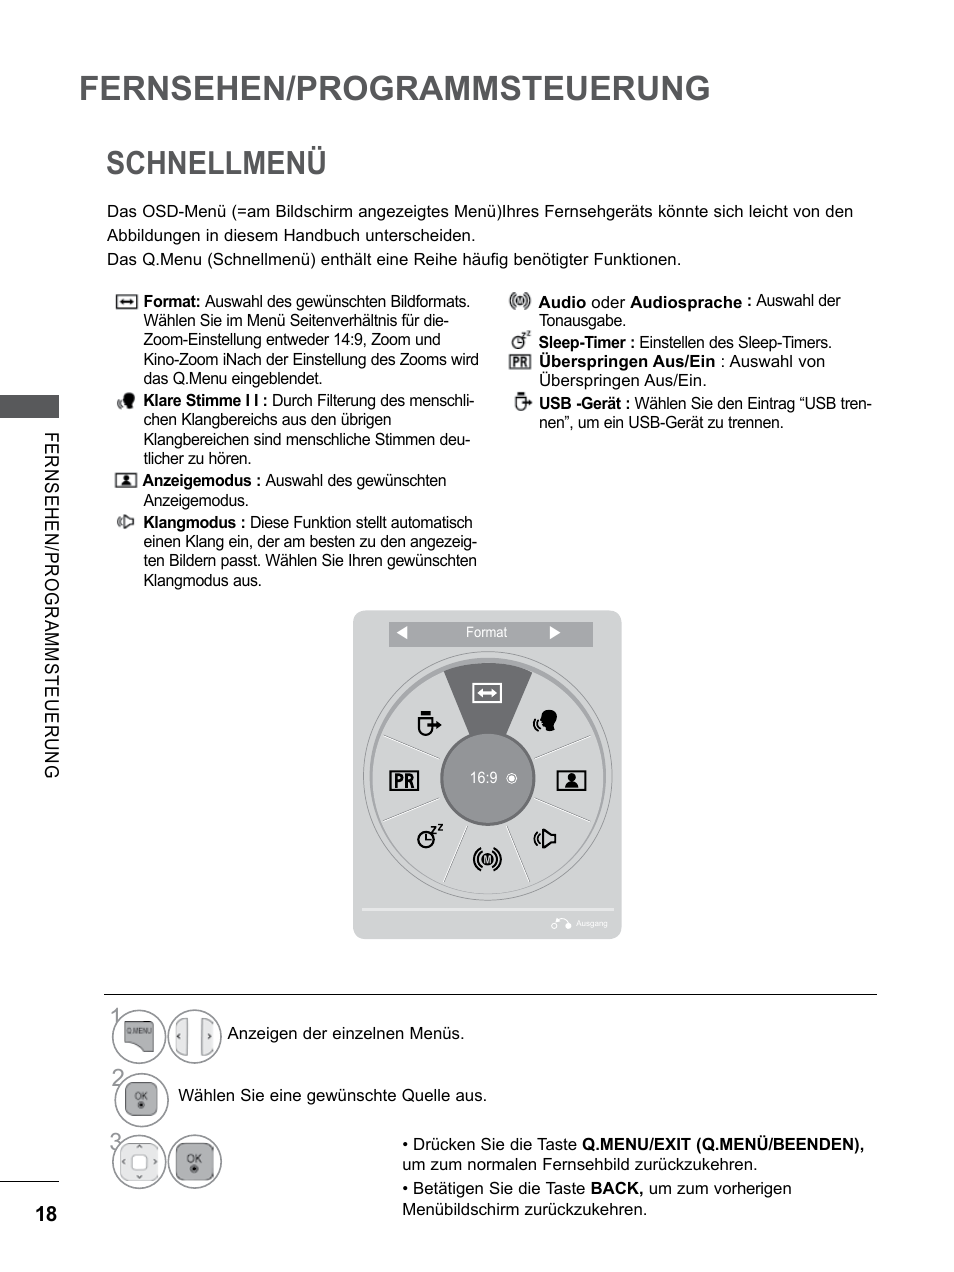 Schnellmenü, Lautstärkeregelung, Fernsehen/programmsteuerung | LG 26LD350 Benutzerhandbuch | Seite 66 / 206